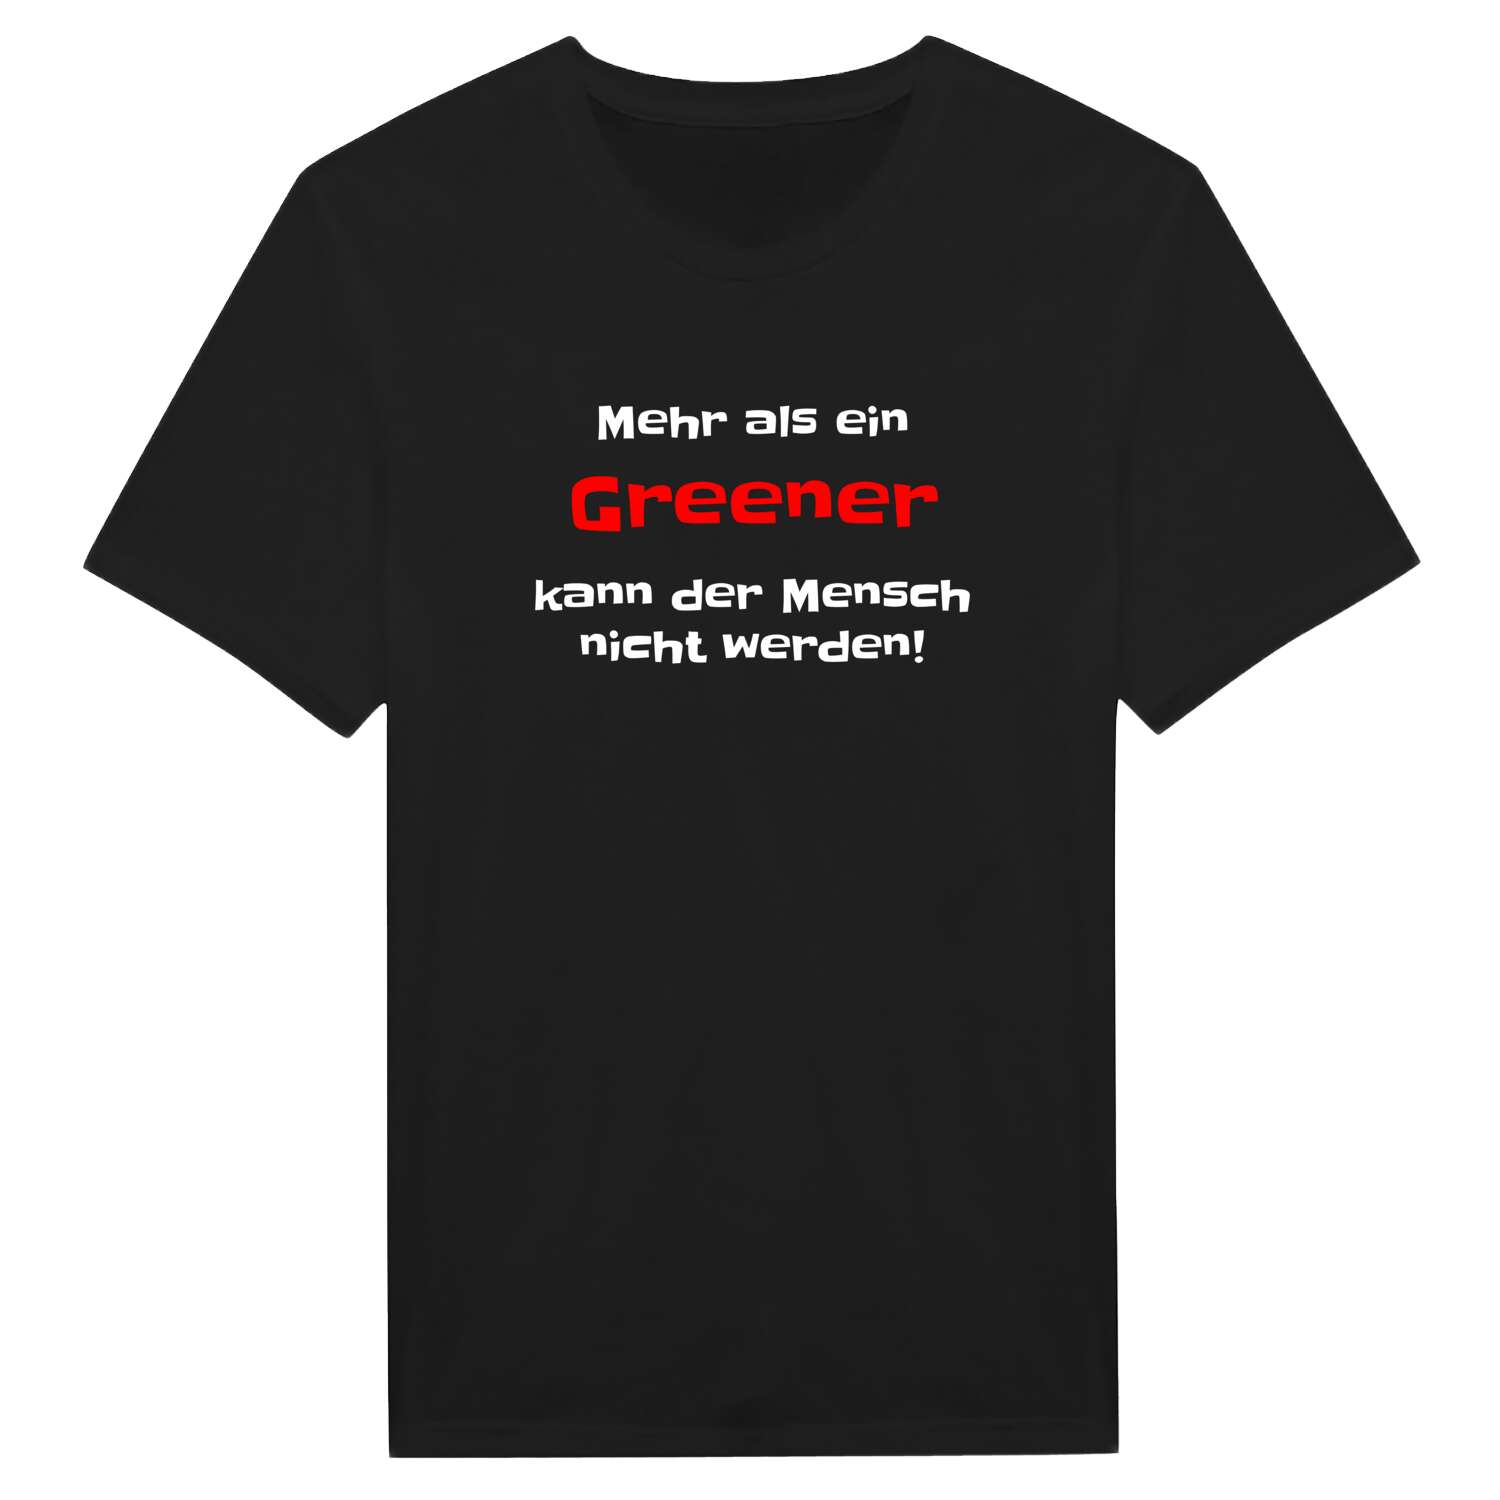 Green T-Shirt »Mehr als ein«